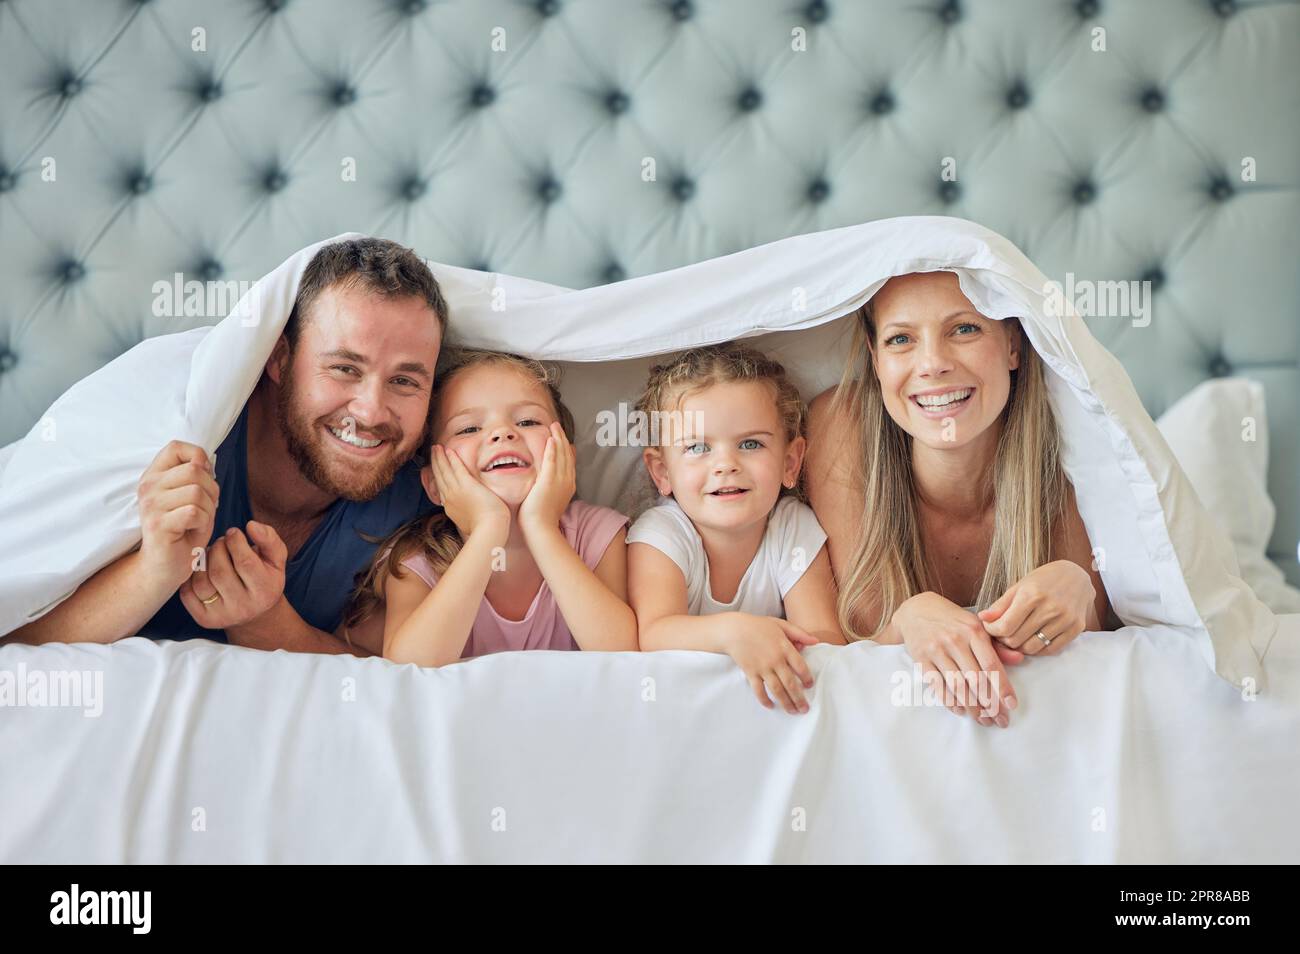 Eine glückliche Familie im Bett unter einer Decke zu Hause. Porträt von lächelnden jungen Eltern, die Spaß mit Kindern im Schlafzimmer haben und mit einer Bettdecke bedeckt sind. Süße kleine Mädchen, die mit ihren Eltern spielen Stockfoto